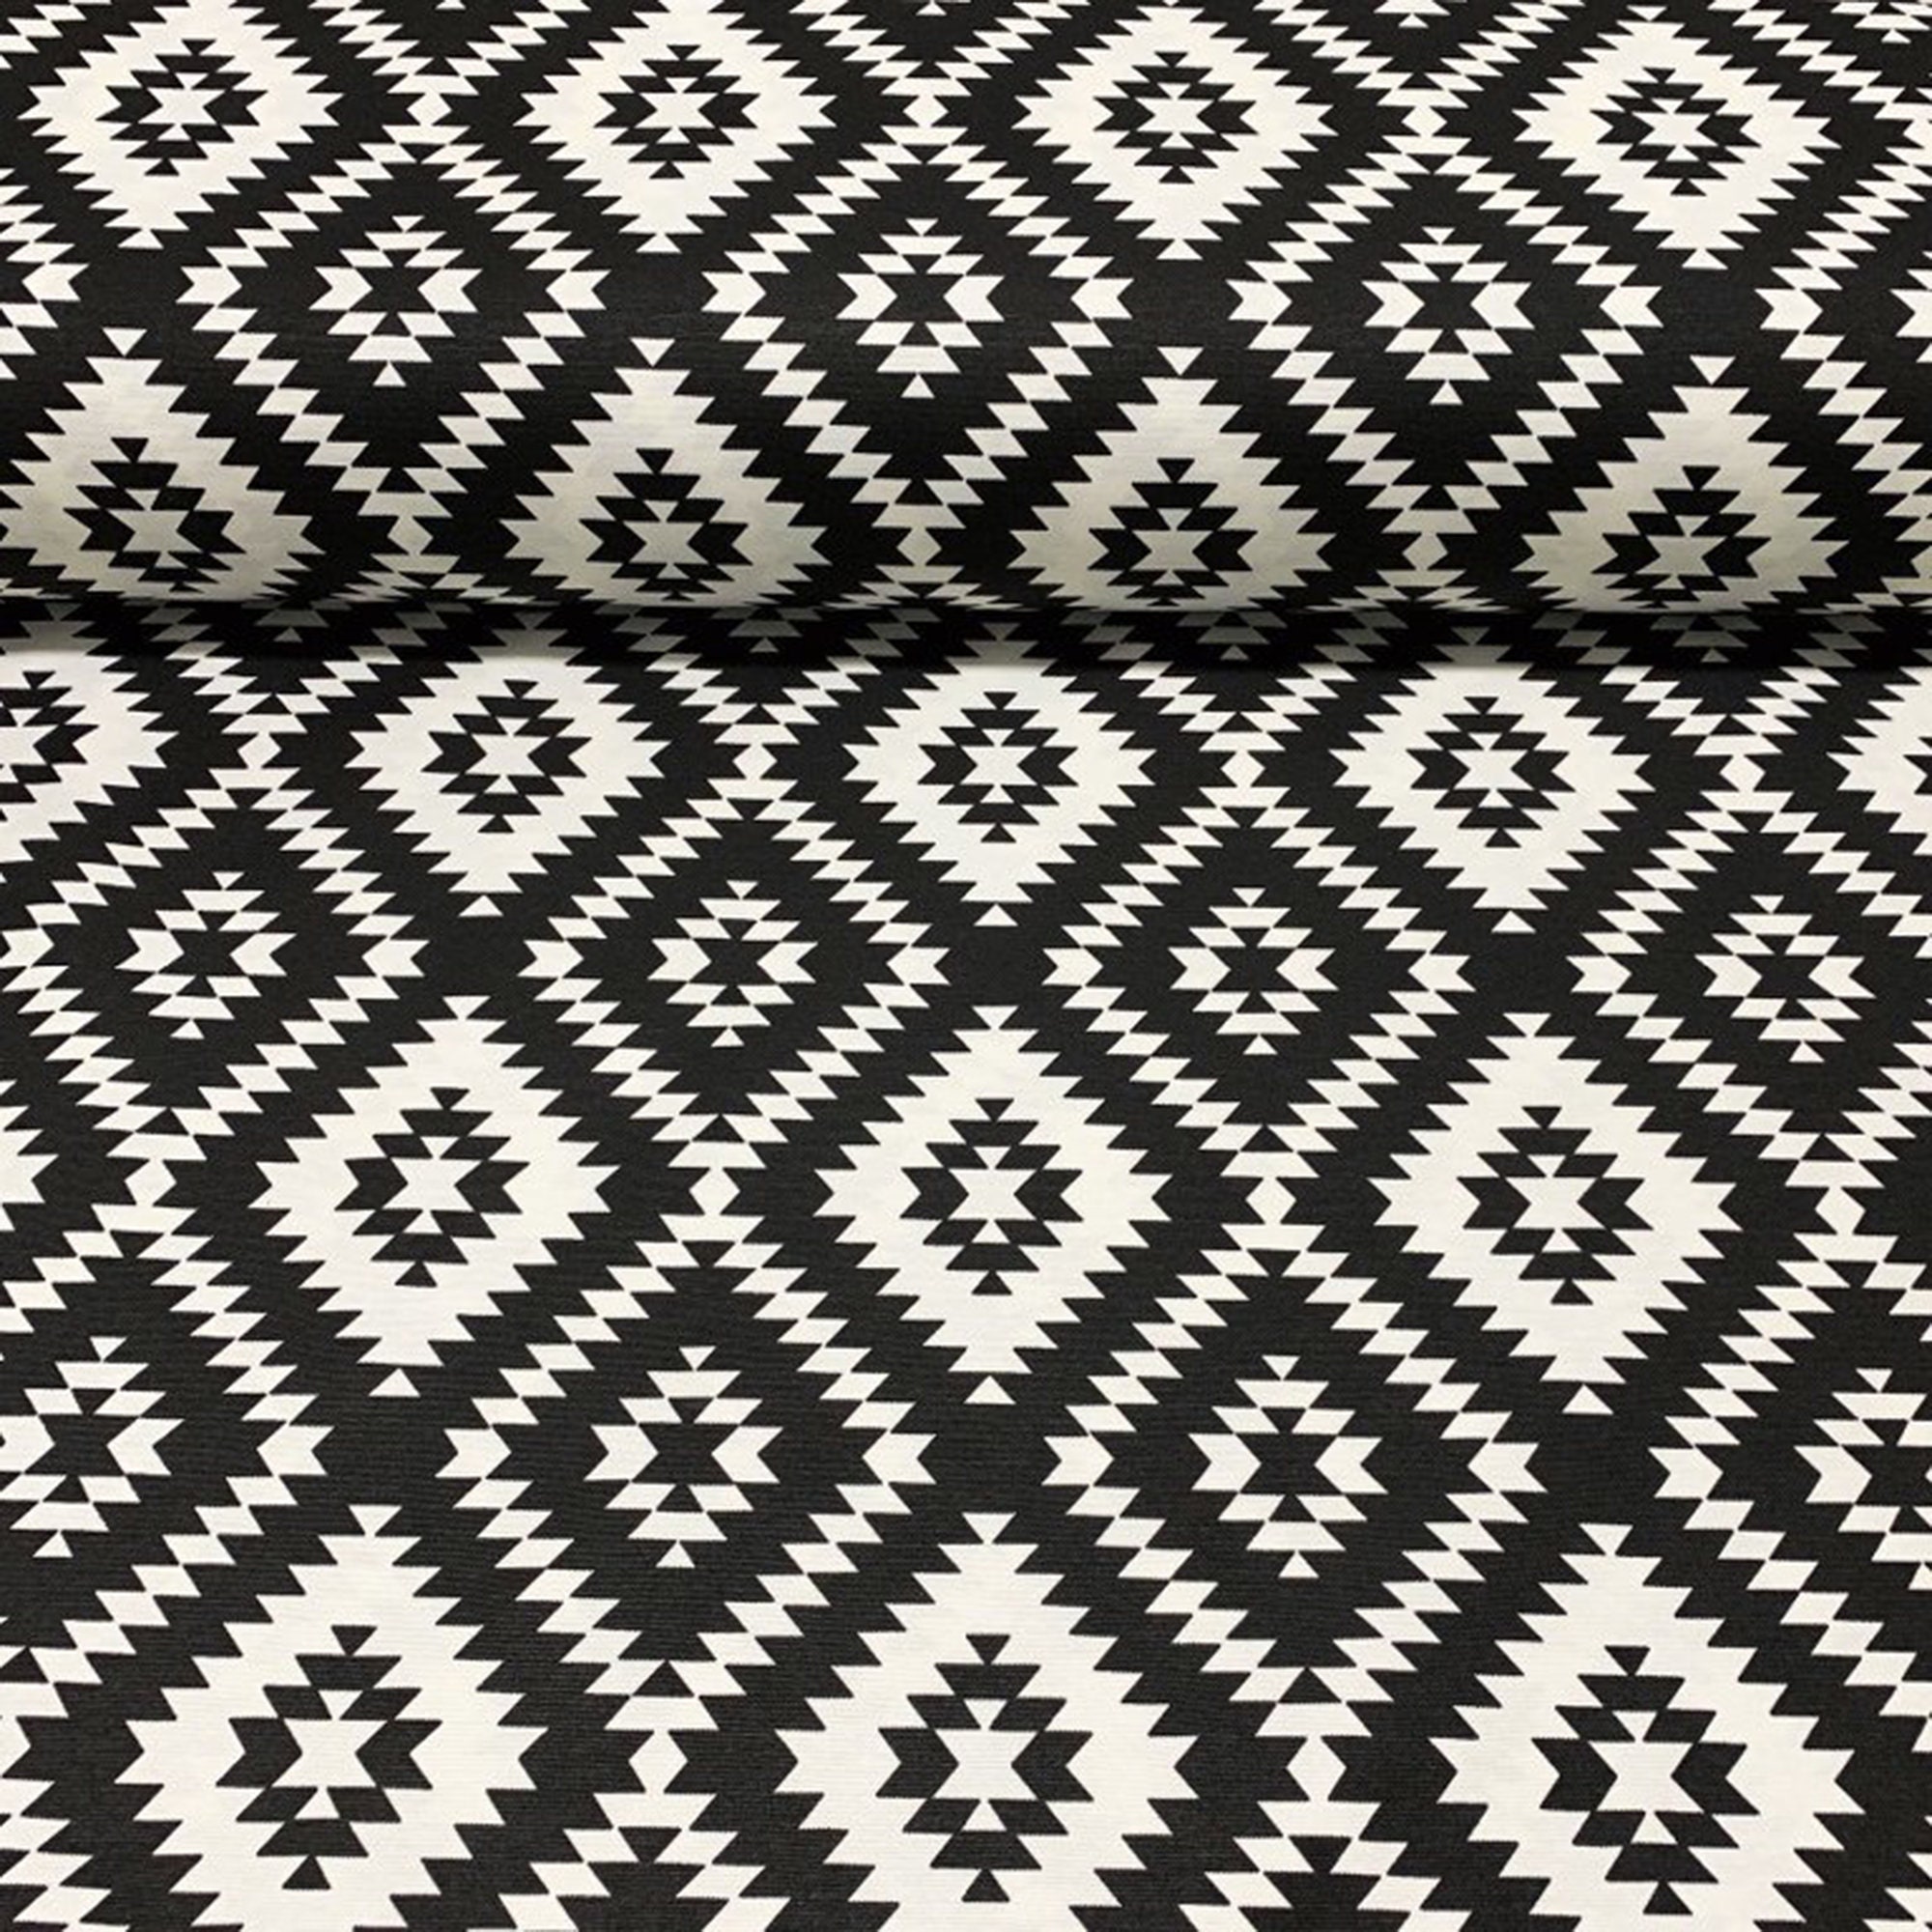 Blanco y negro Ikat Tela de tapicería Geométrico Tribal - Etsy España